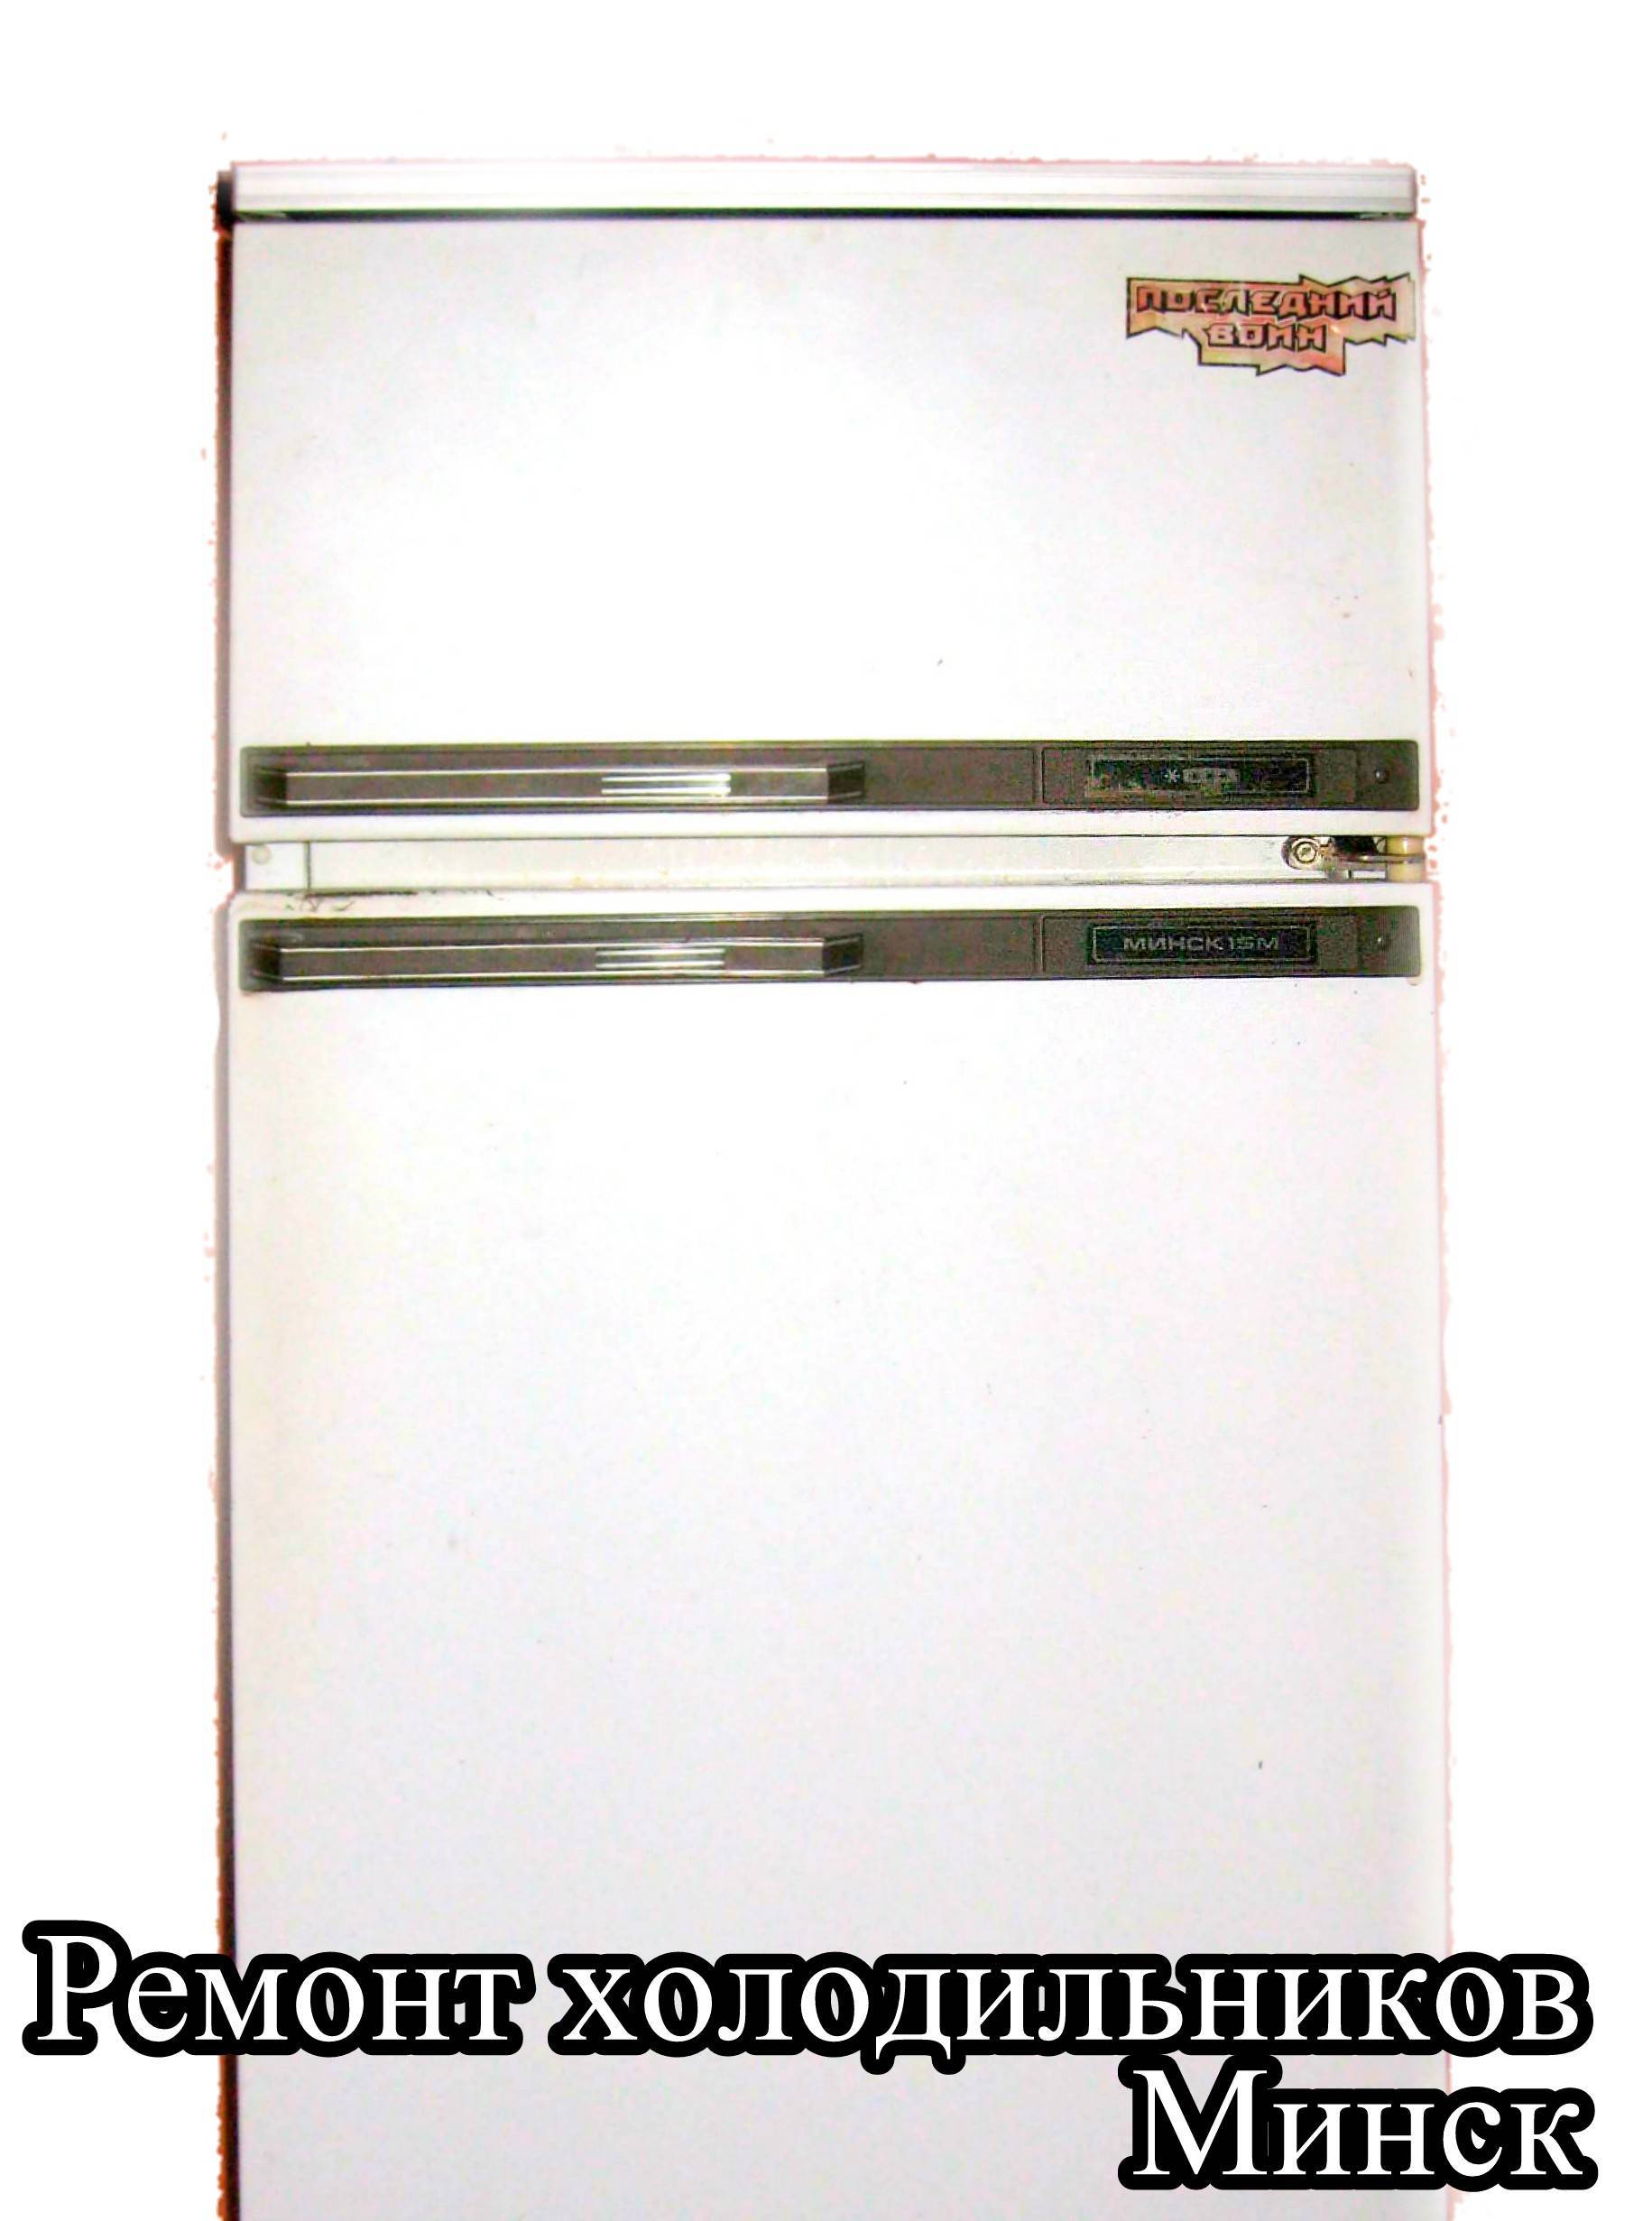 Двухкамерный холодильник минск - инструкция по эксплуатации, неисправности